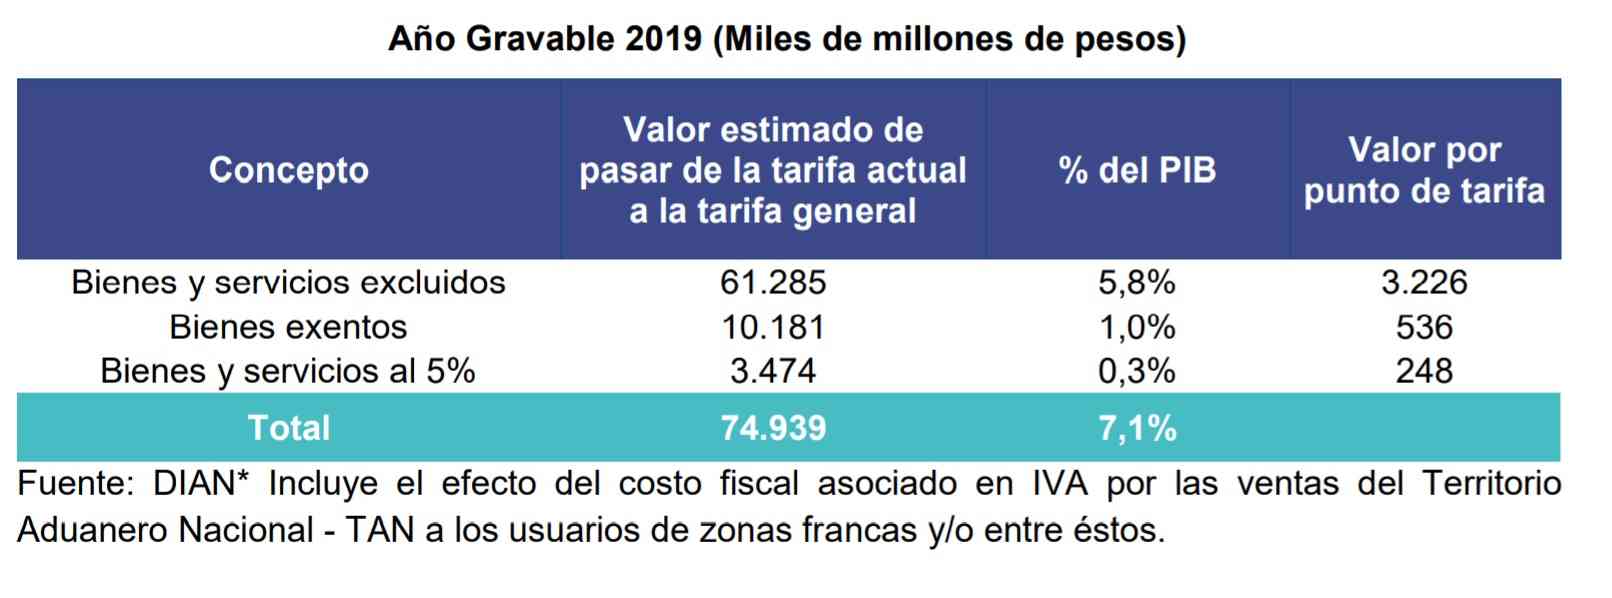 ¿Cómo funciona el IVA en Colombia?